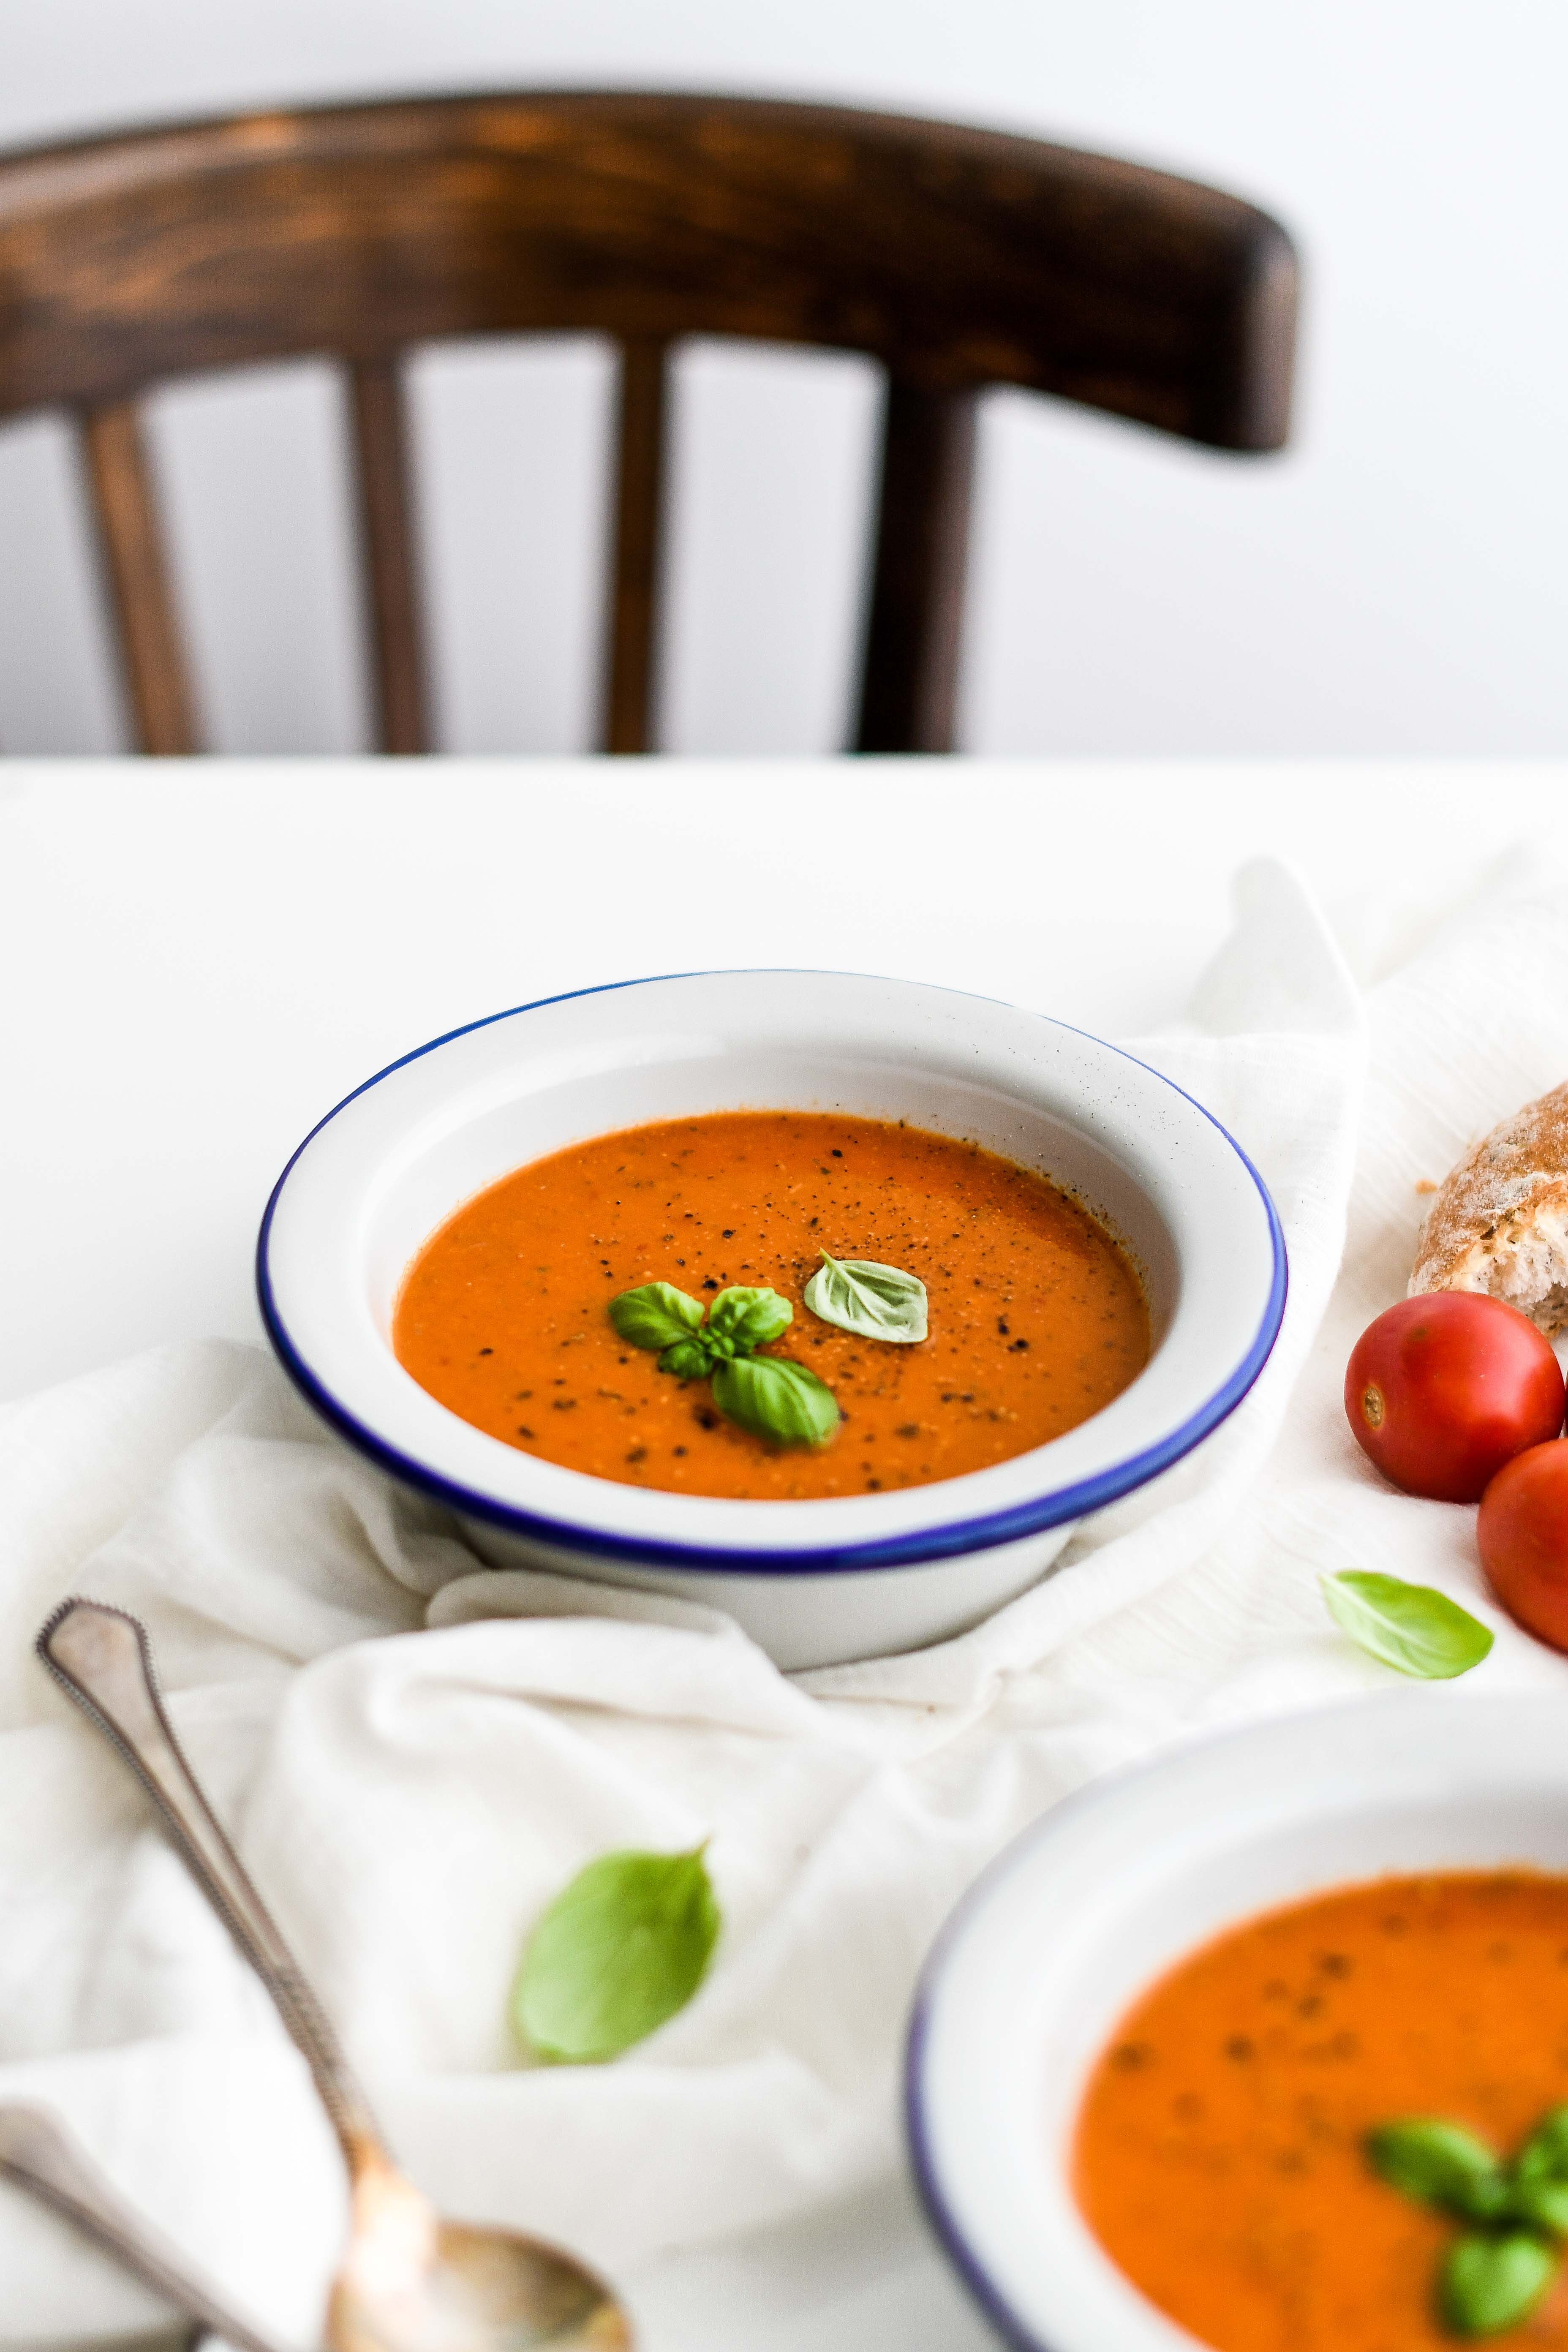 paradajkova polievka / tomato soup